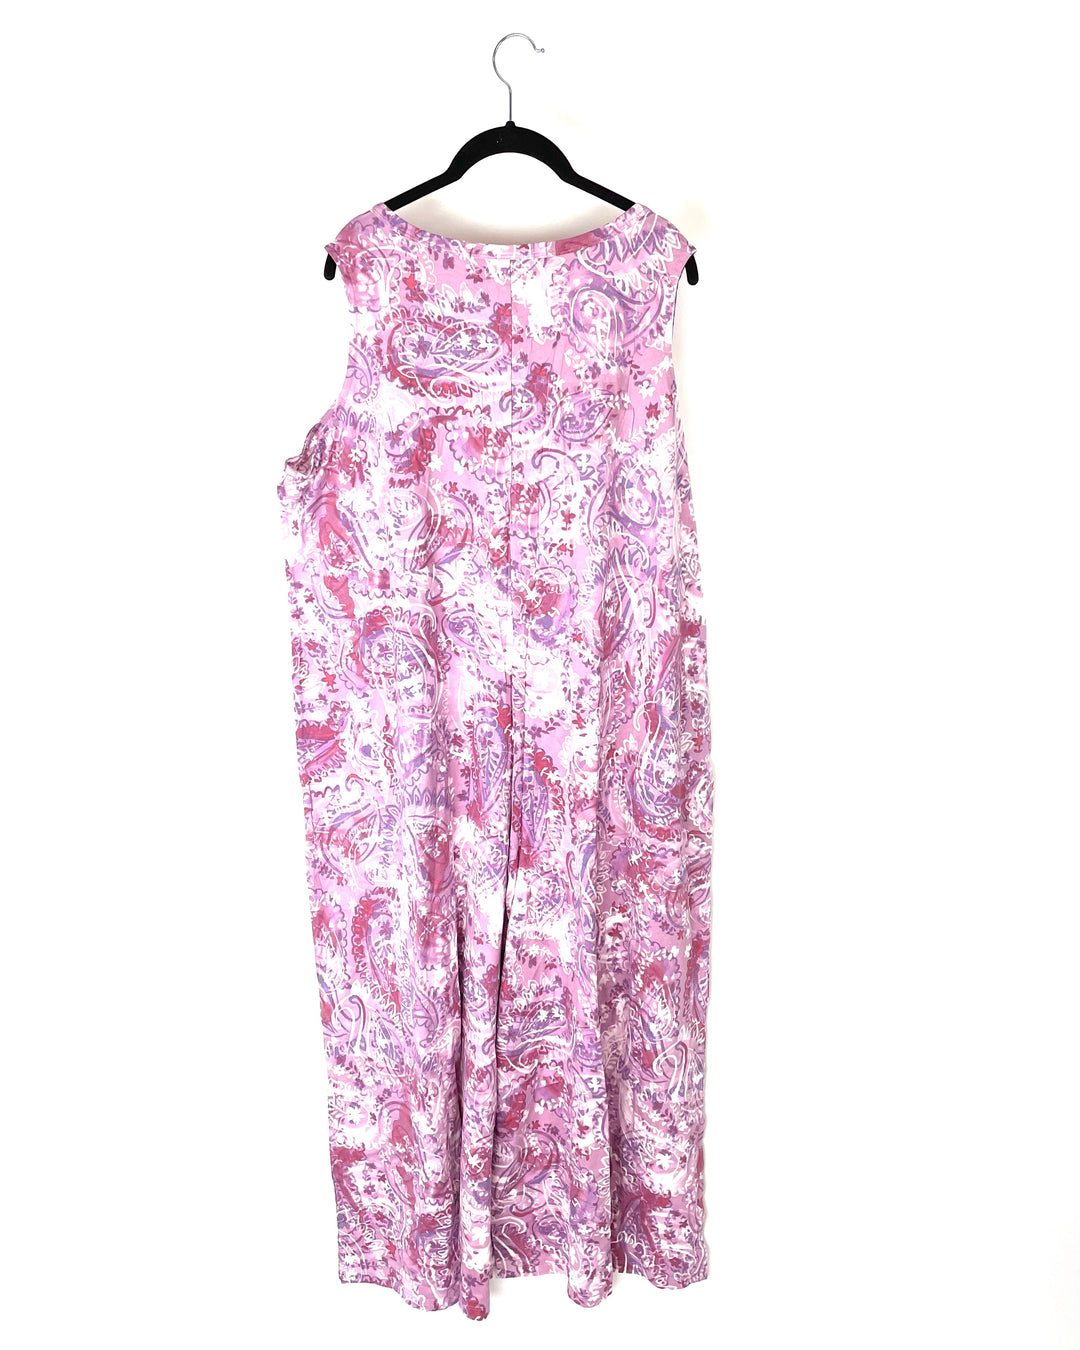 Pink Floral Capri Jumpsuit - 1X